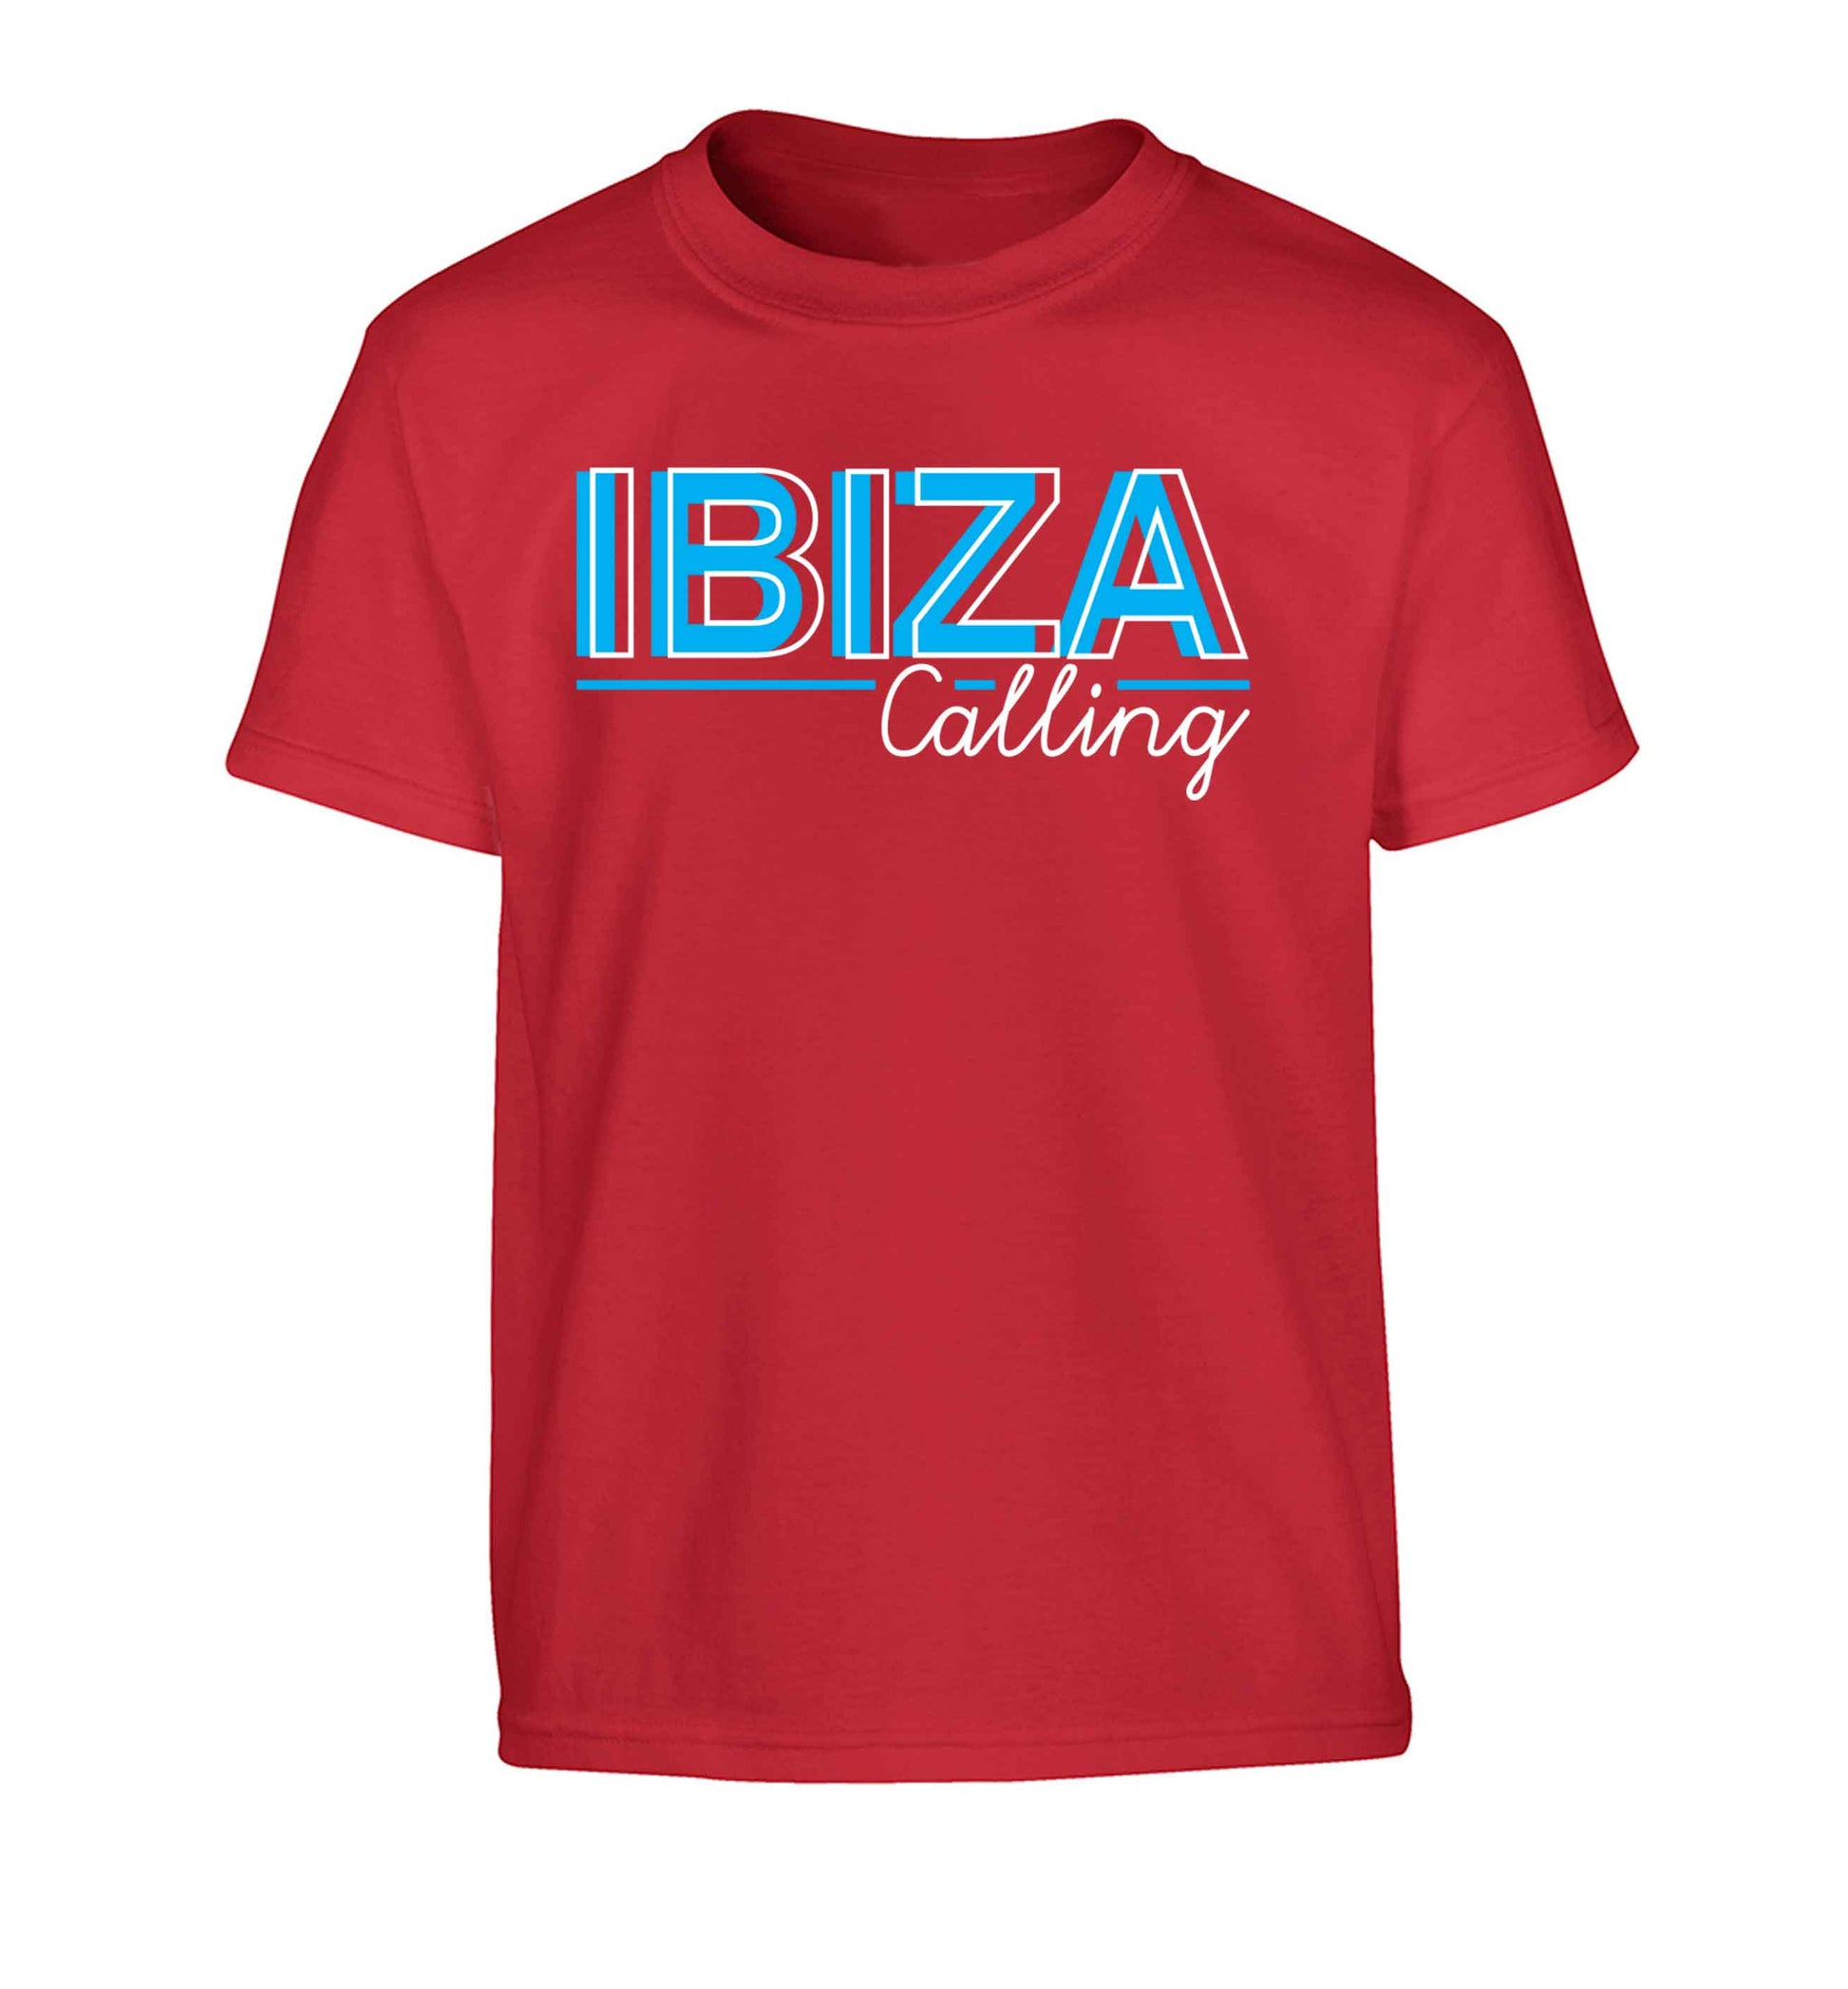 Ibiza calling Children's red Tshirt 12-13 Years